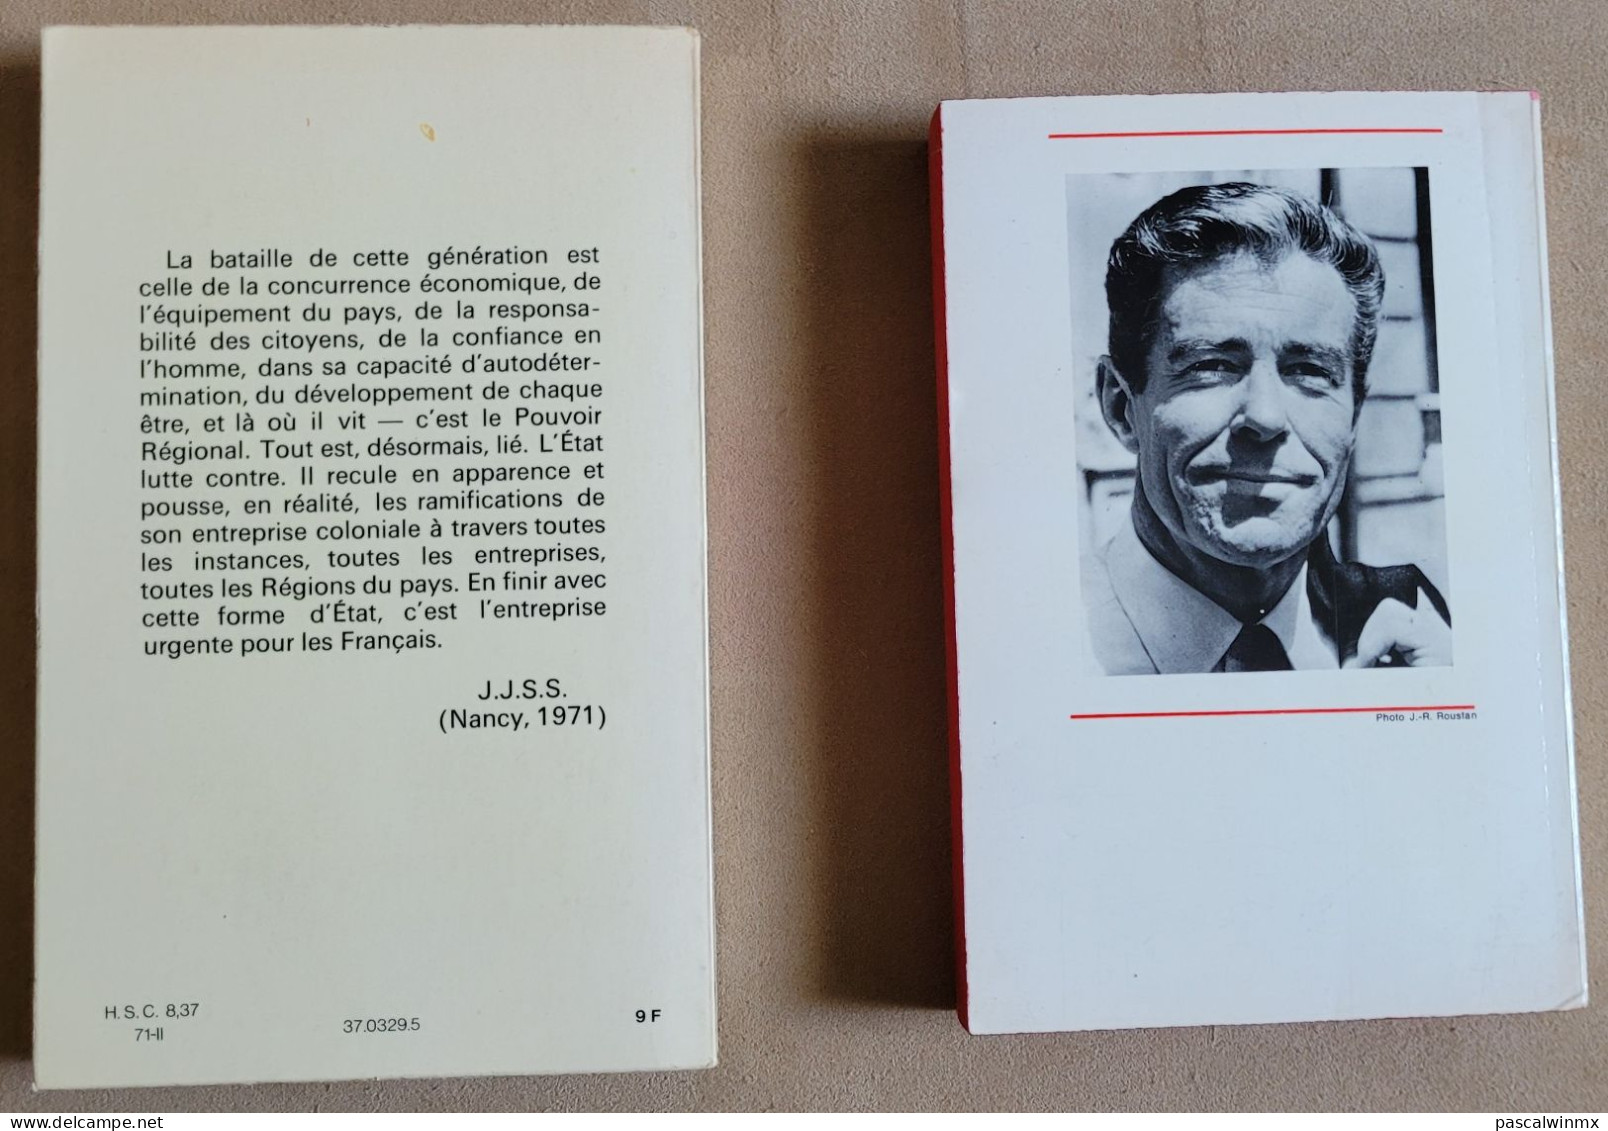 LOT de 5 Livres de JJ SERVAN-SCHREIBER + 1 de son Frère Jean-Louis